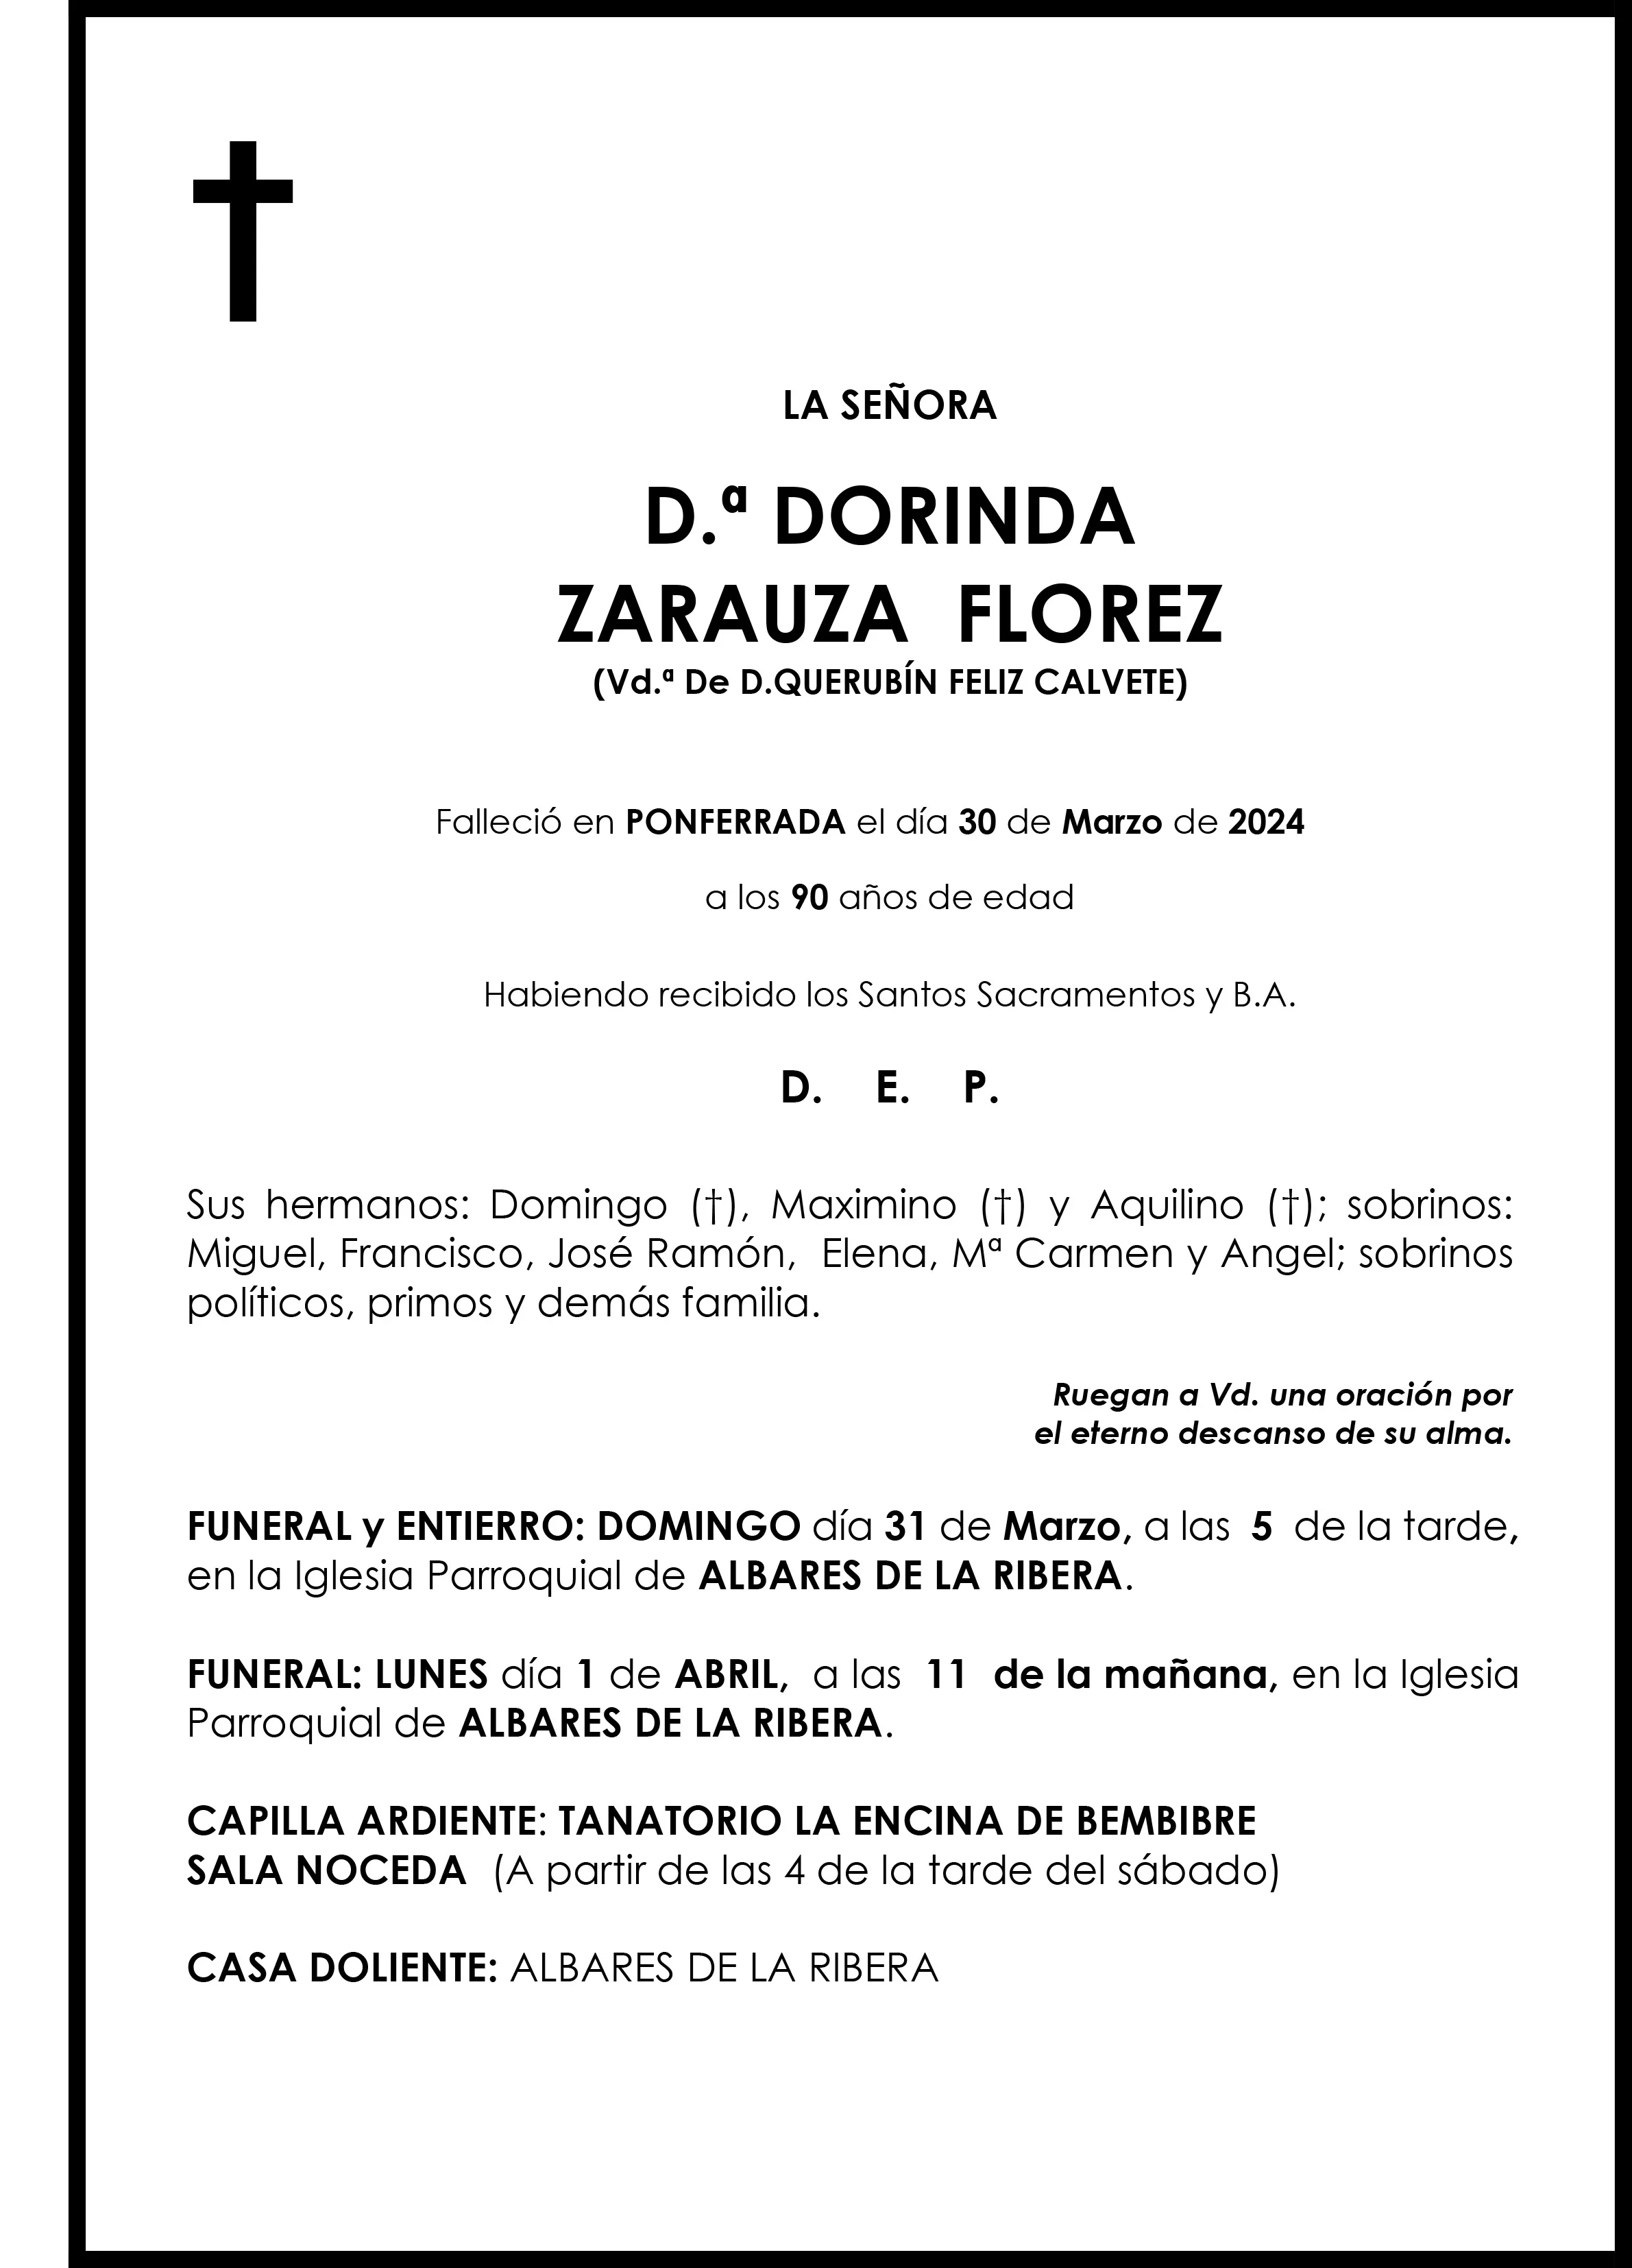 DORINDA ZARAUZA FLORES